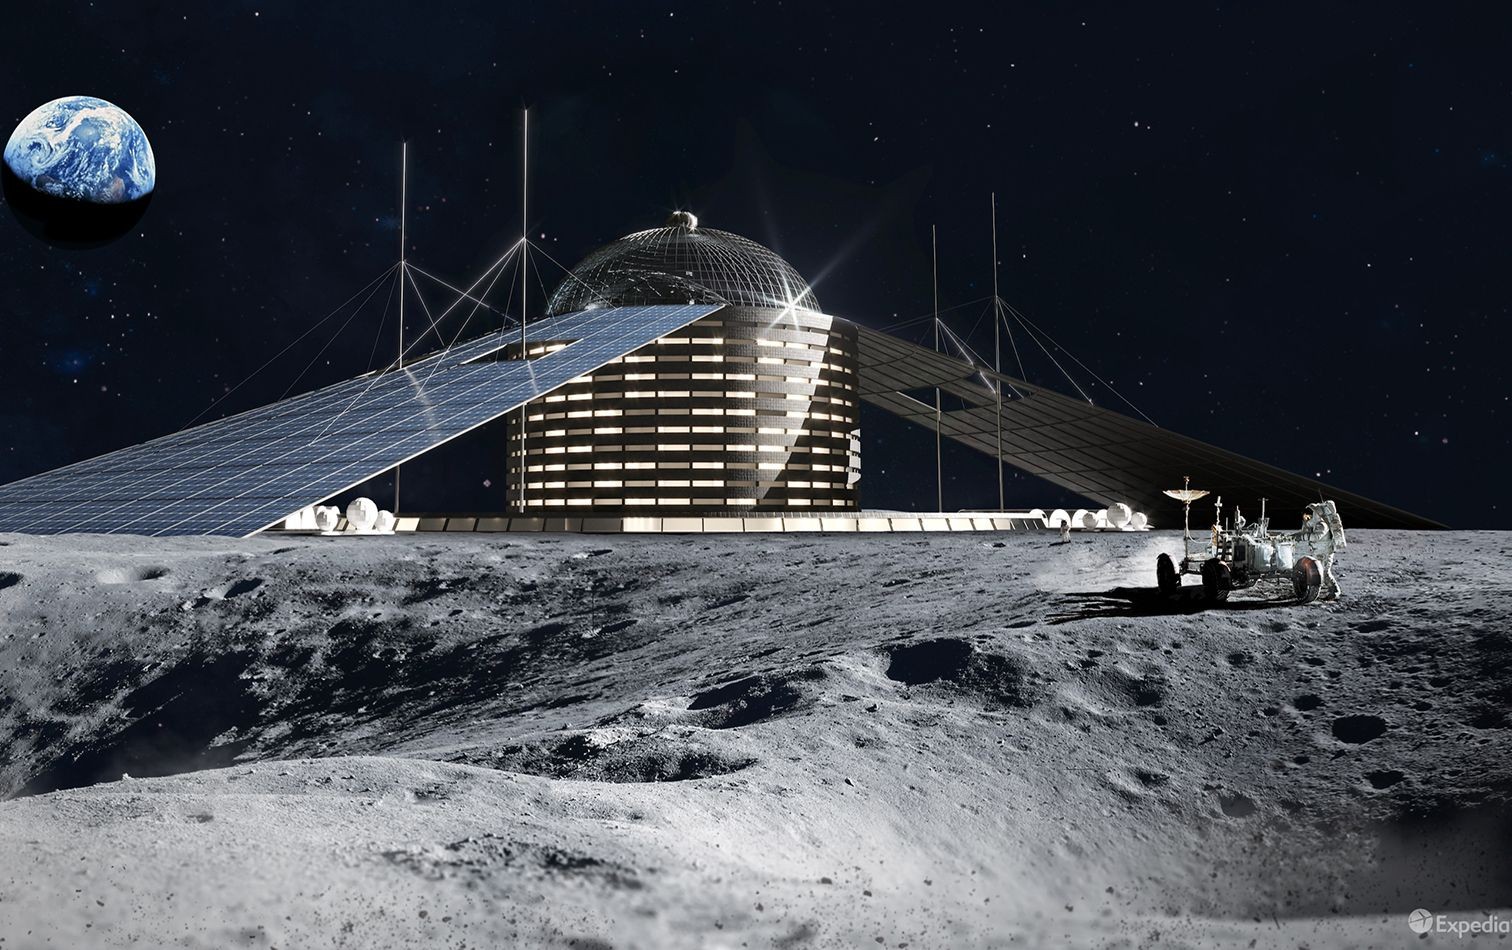 Utopisch astronomisch: Milliardär Barron Hilton wollte auf dem Mond eine ganze Flotte an Hilton-Hotels bauen. Da überrascht es nicht, dass auch dieses Projekt zu einer Planungsleiche wurde. Expedia zeigt aber, wie das Flaggschiff der Hilton-Flotte hätte a